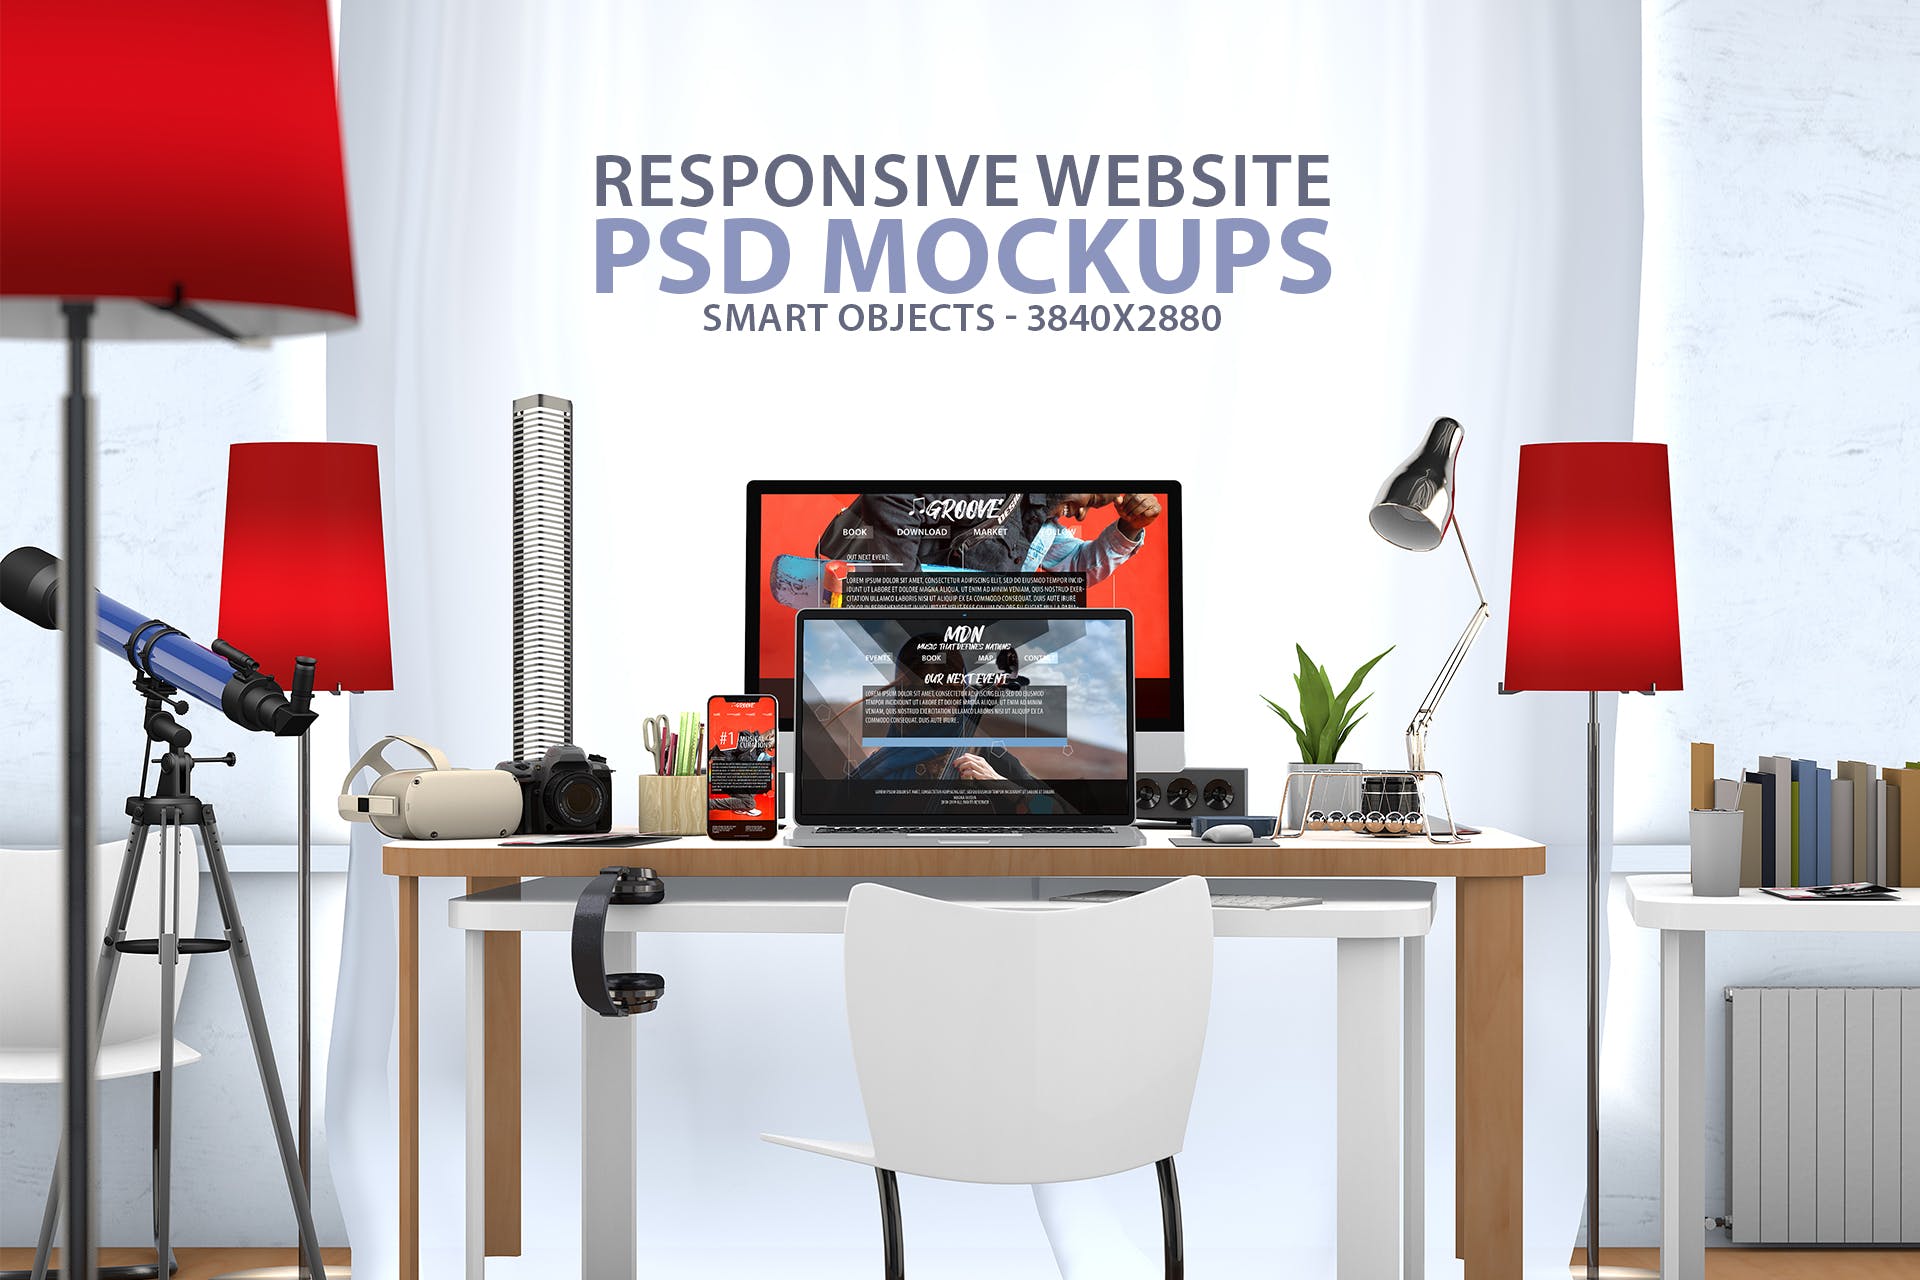 创意办公桌面响应式设计效果图预览样机素材库精选 Responsive Website PSD Mock-up Desk插图